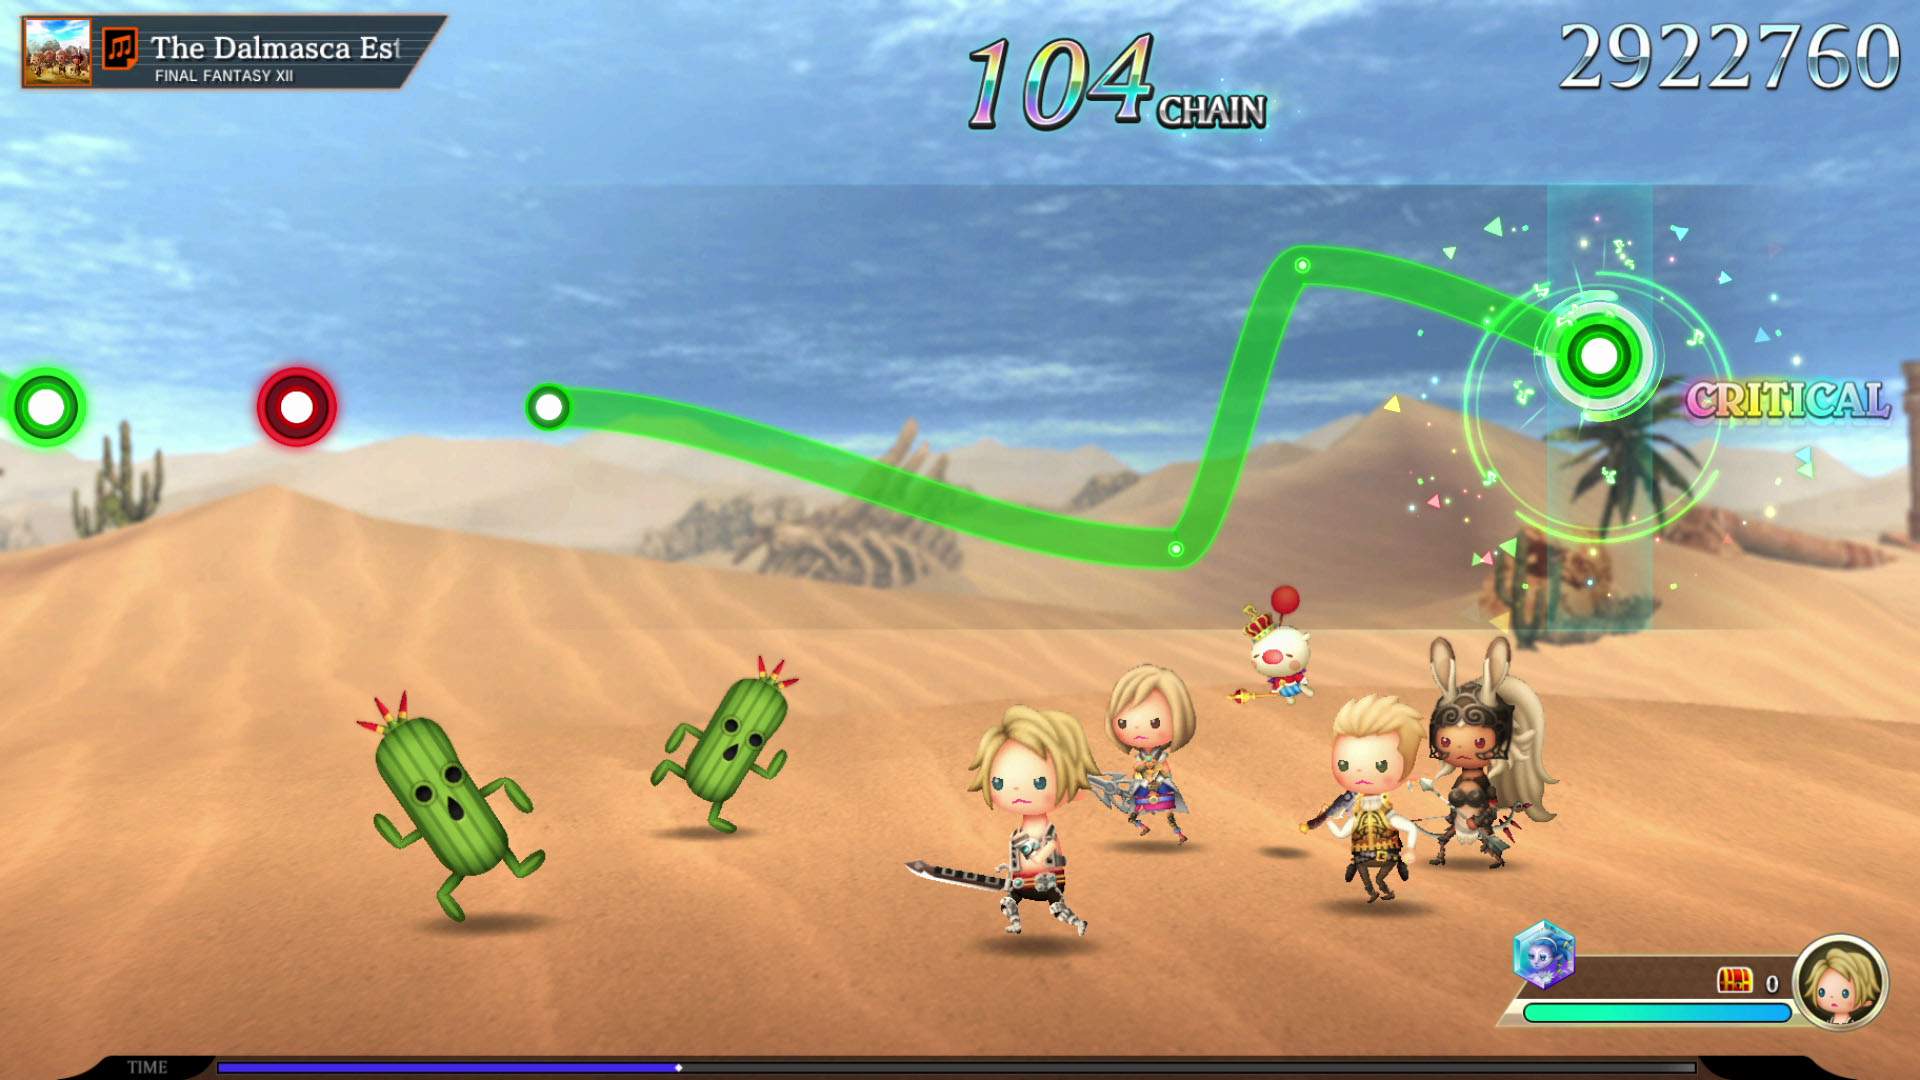 FINAL FANTASY-Charaktere und Kaktoren kämpfen in der Wüste zur Musik aus FINAL FANTASY 12.